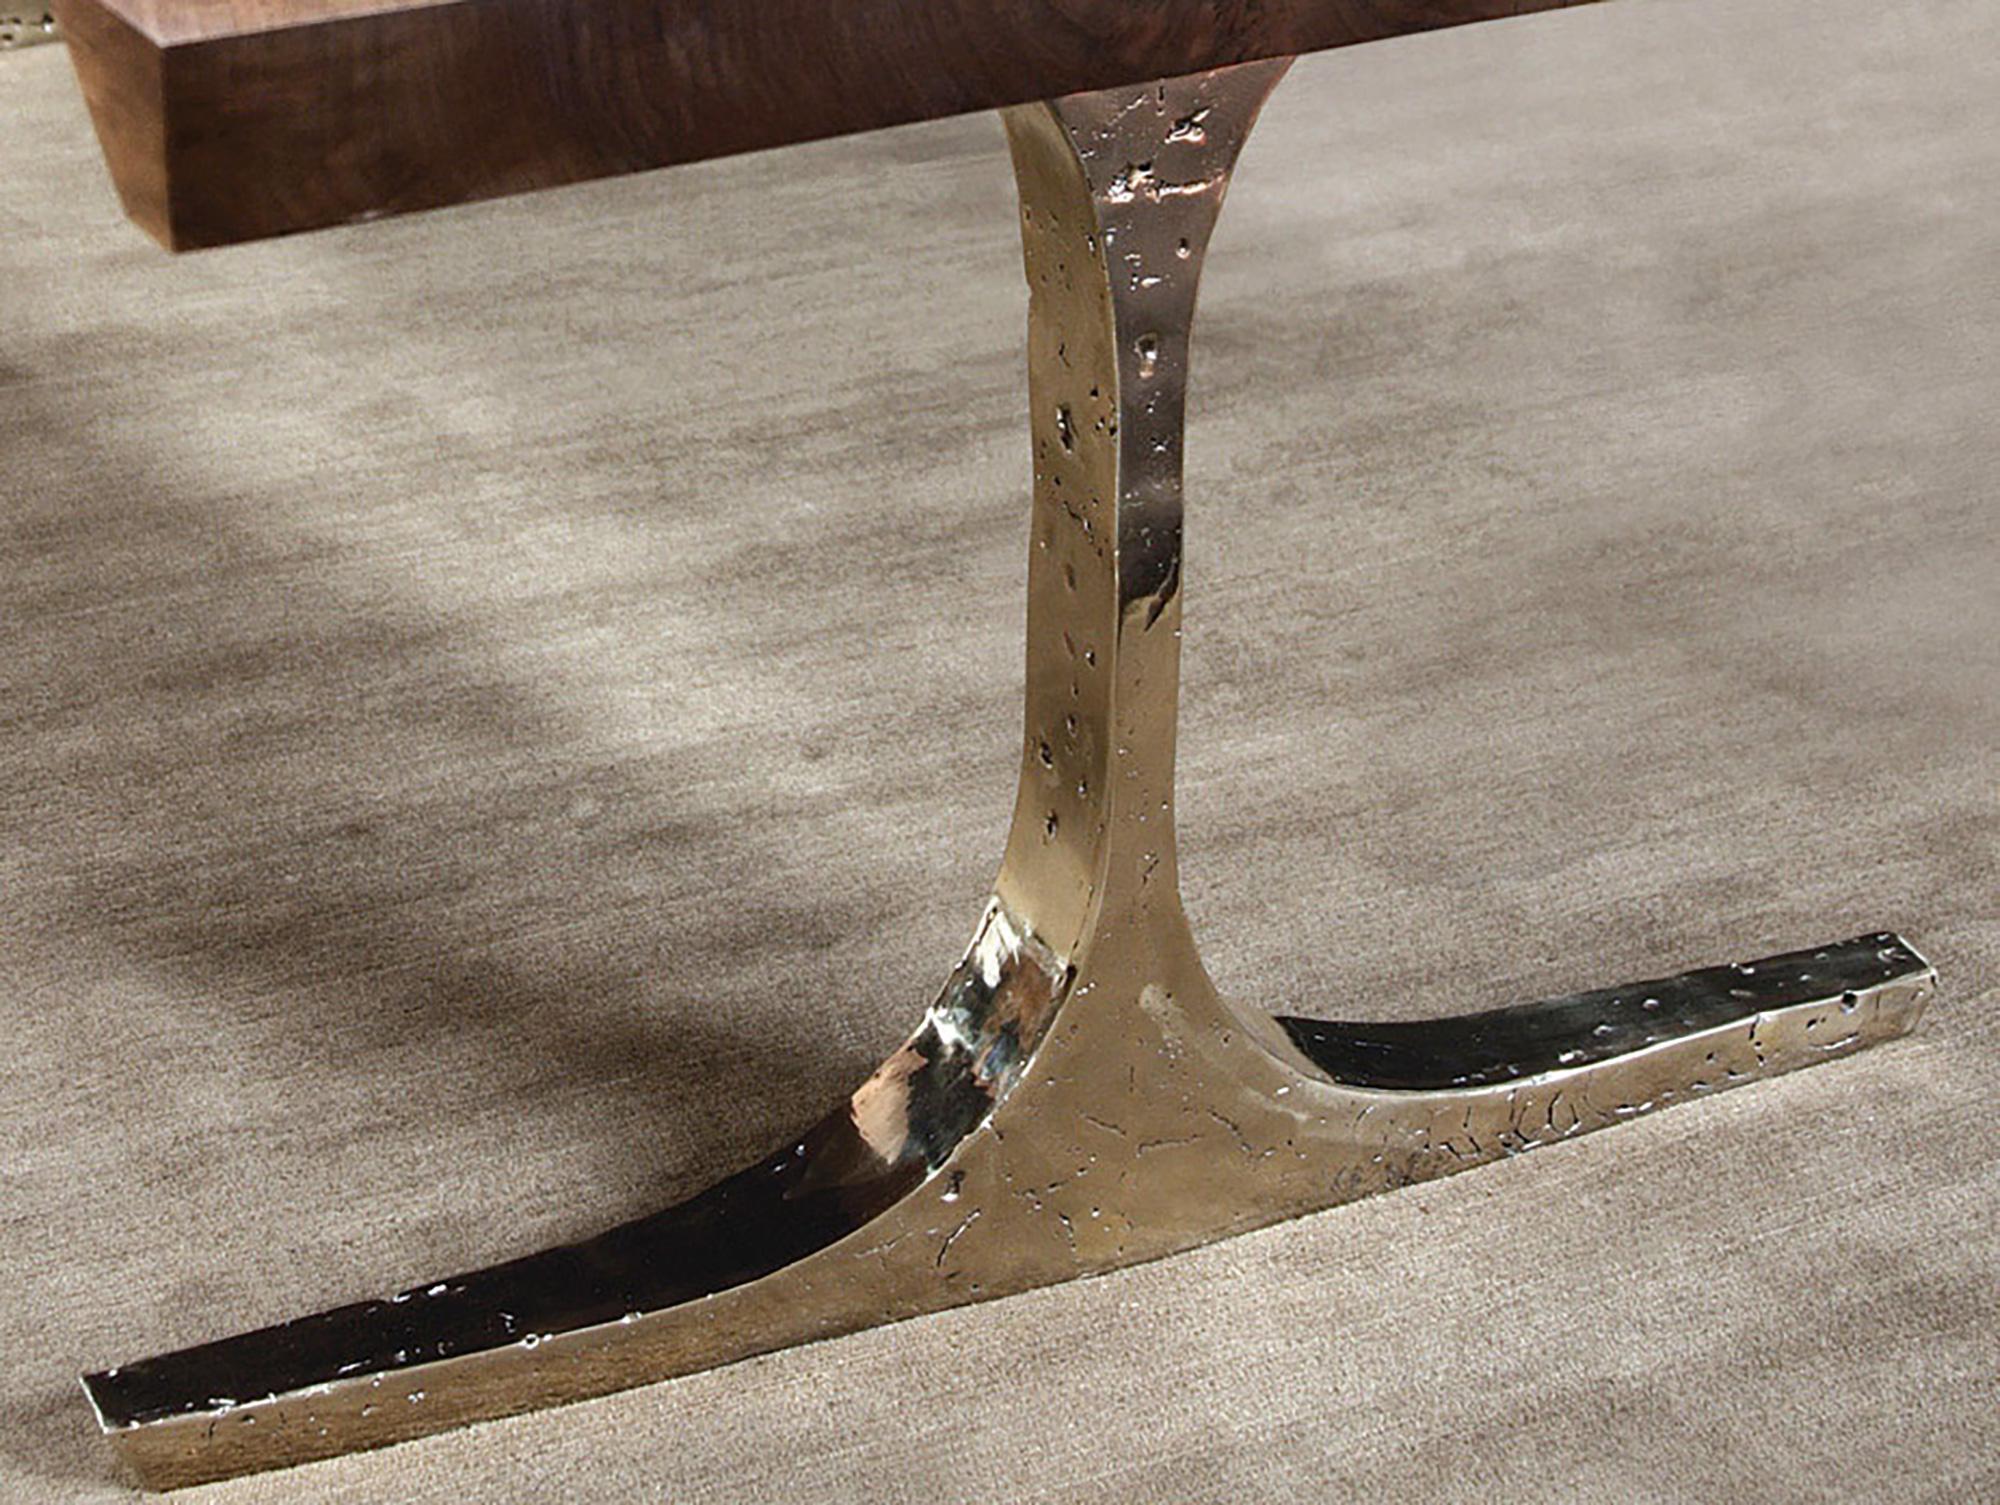 Der Knight Base Dining Table von Barlas Baylar verfügt über einen Sockel aus reiner Bronze, der mit antiken Bildhauertechniken hergestellt wird und ein Gefühl von Integrität, Stärke und kühnem Charakter vermittelt.  Das Design des Sockels ist so